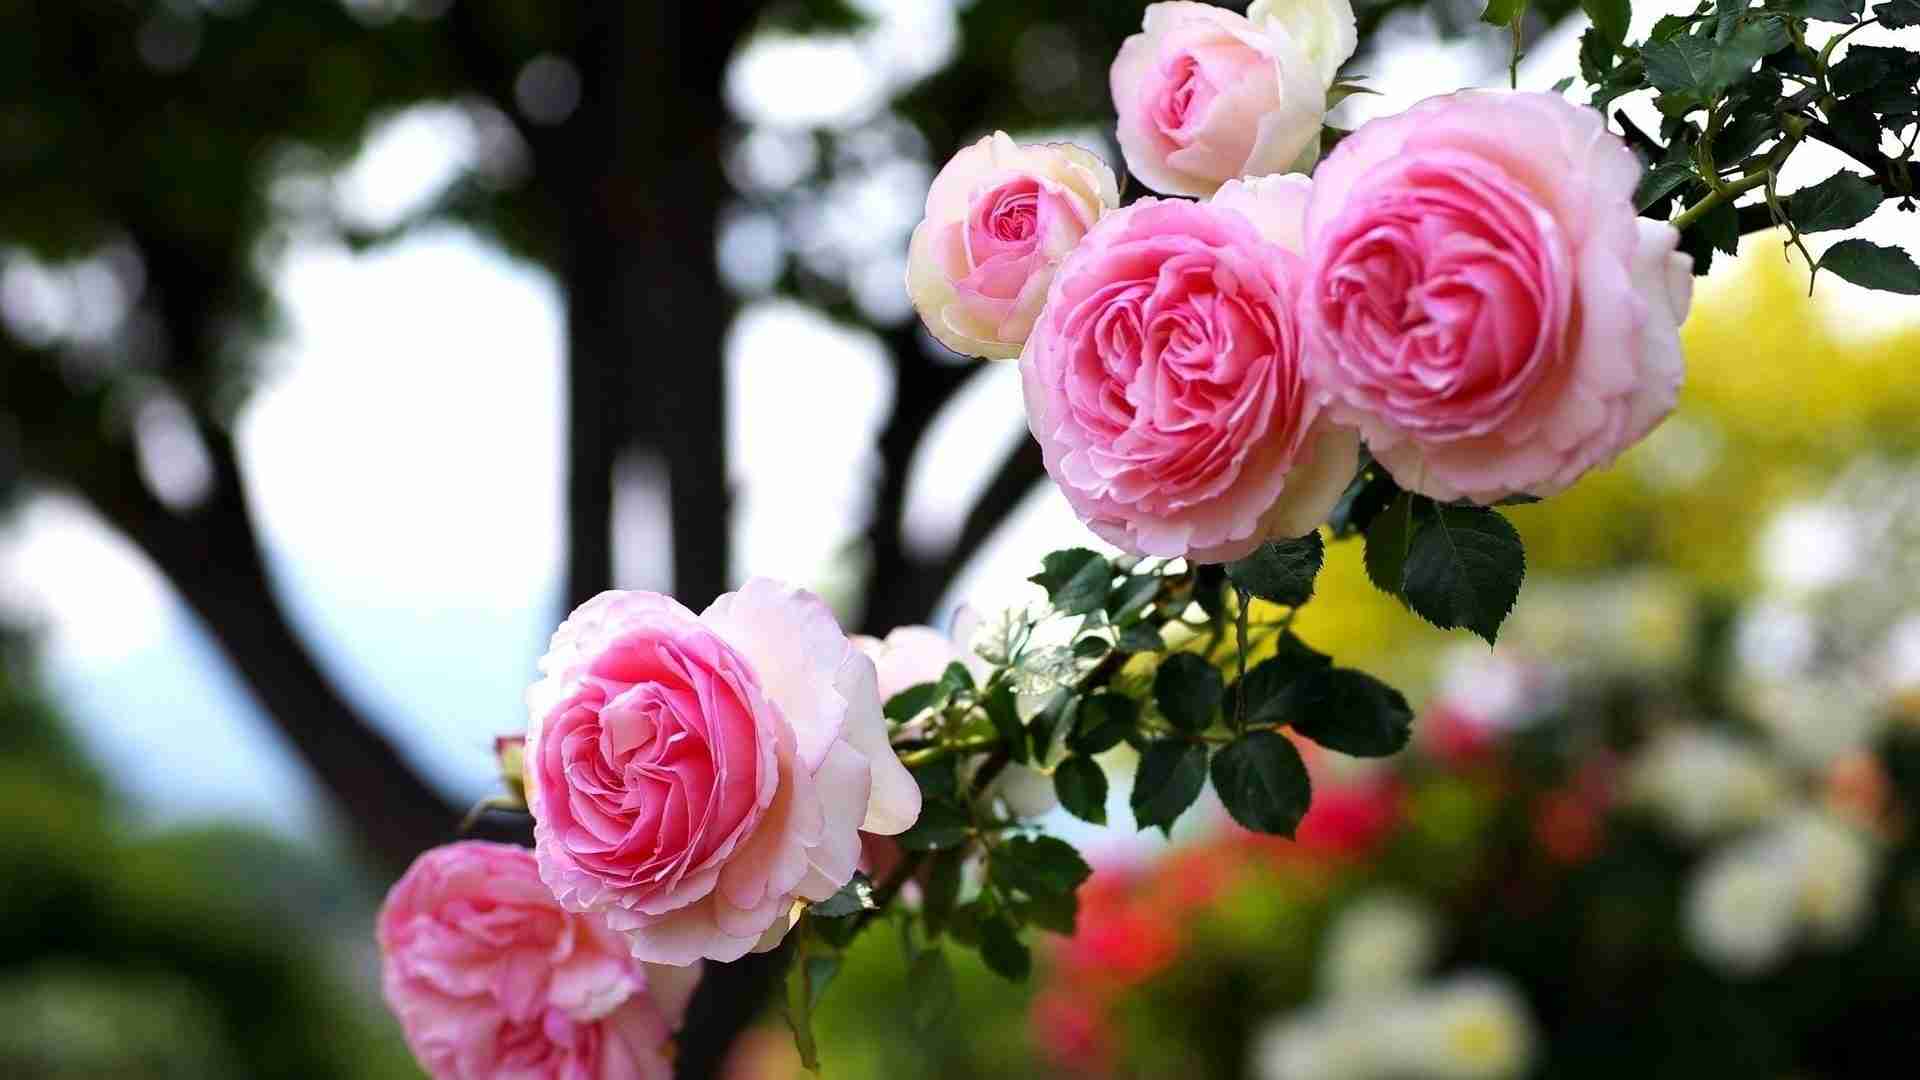 Love Rose Hd Wallpapers 1080p - HD Wallpaper 